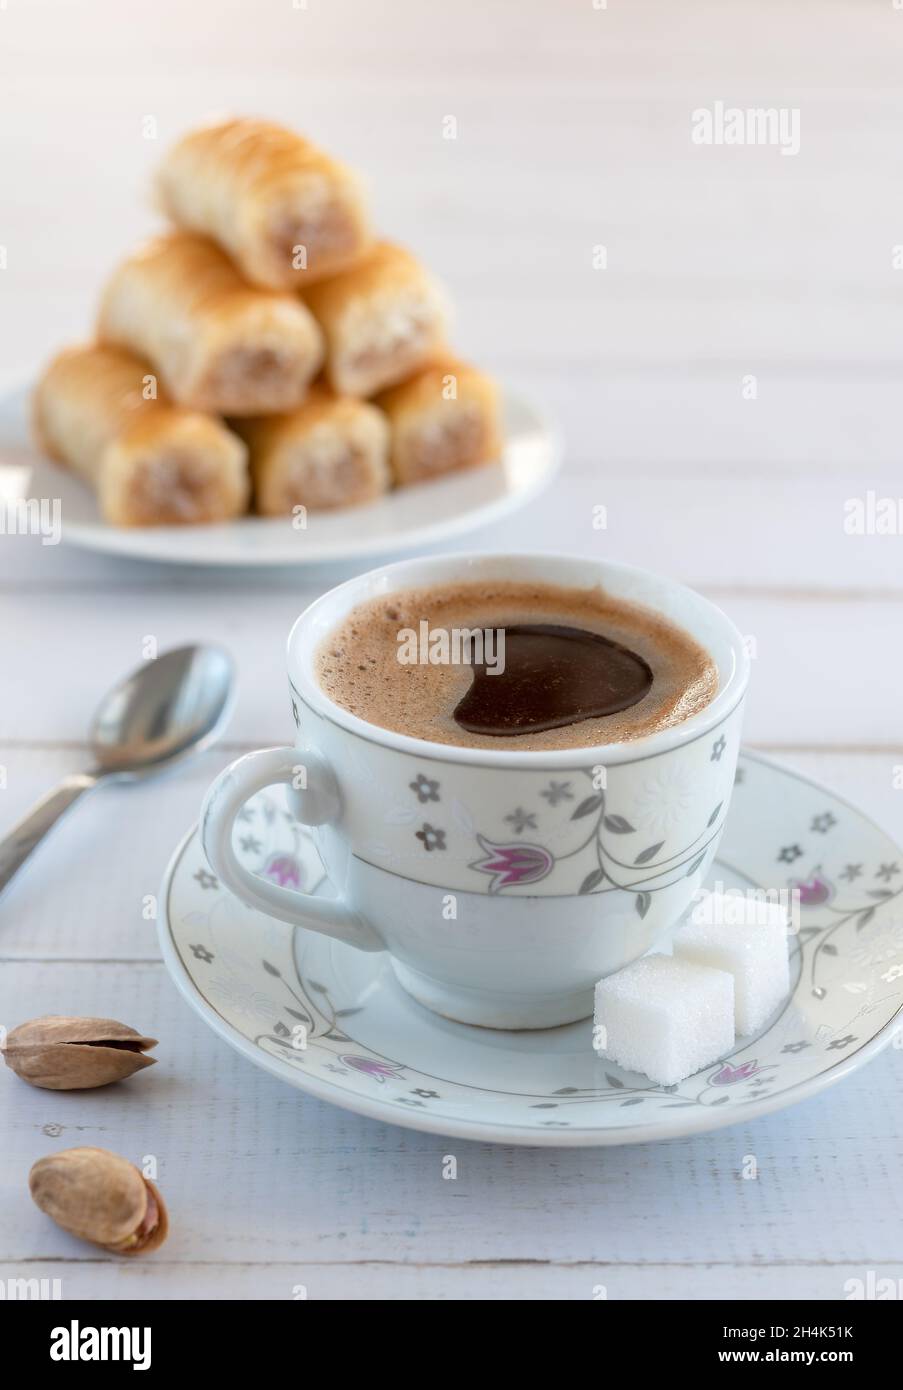 Eine Tasse türkischer Kaffee und traditionelle Süße - Baklava. Vertikale Aufnahme. Stockfoto